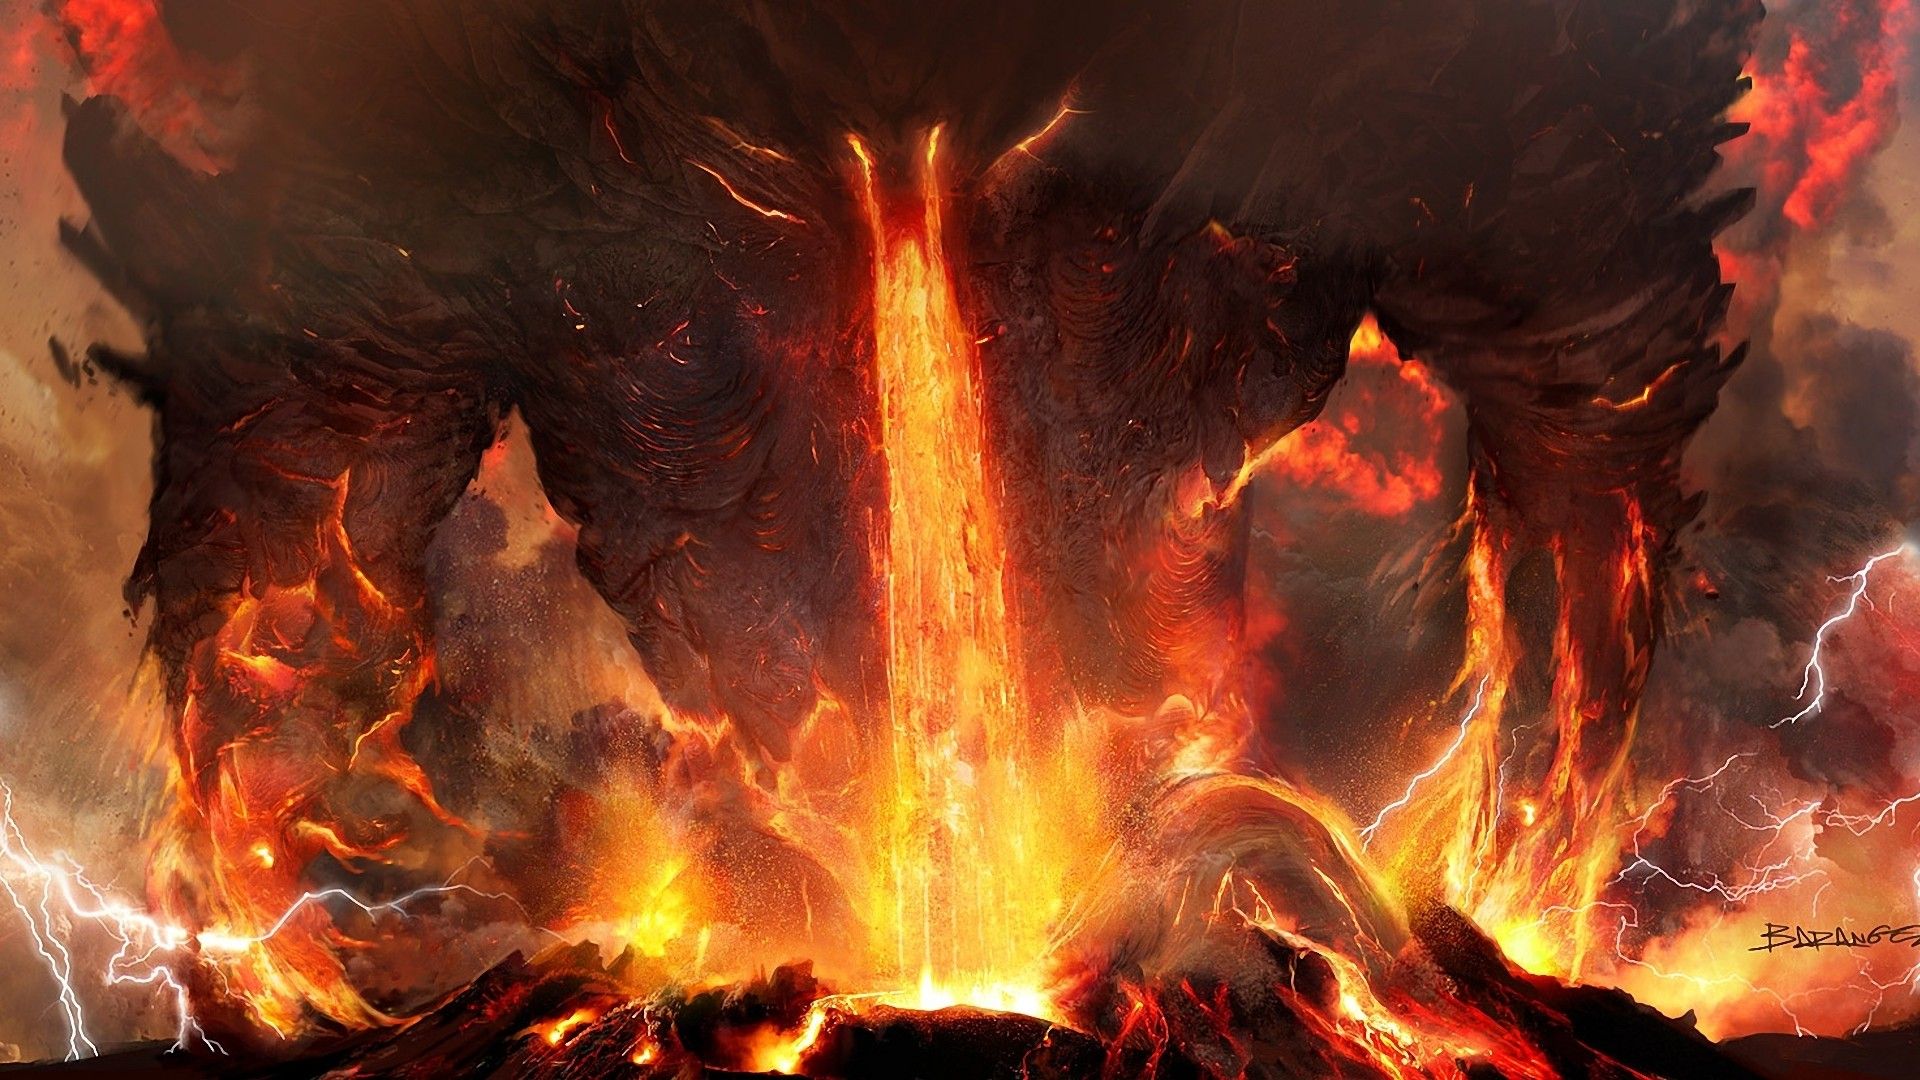 Art titanium anger fire lightning lava volcano ash demon monster monsters wallpaperx1080